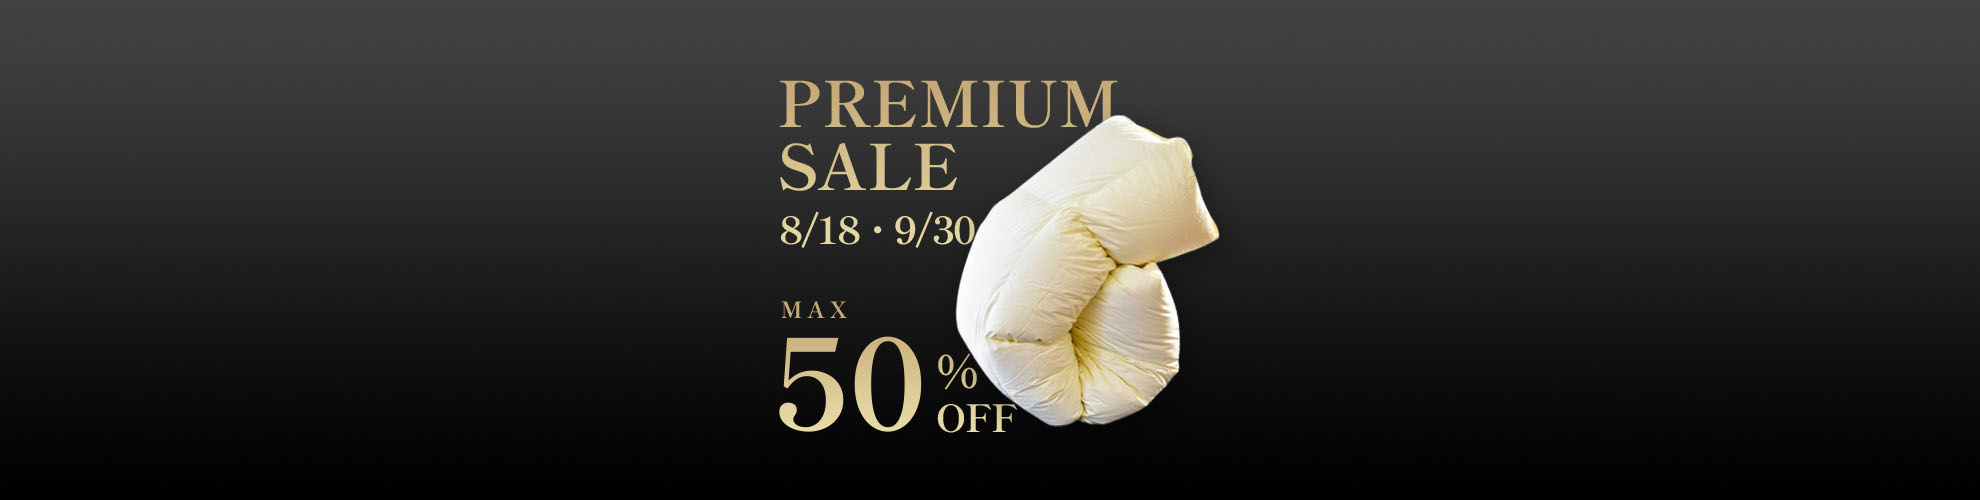 PREMIUM SALE】羽毛布団・布団カバーなどの高品質寝具が期間限定特別